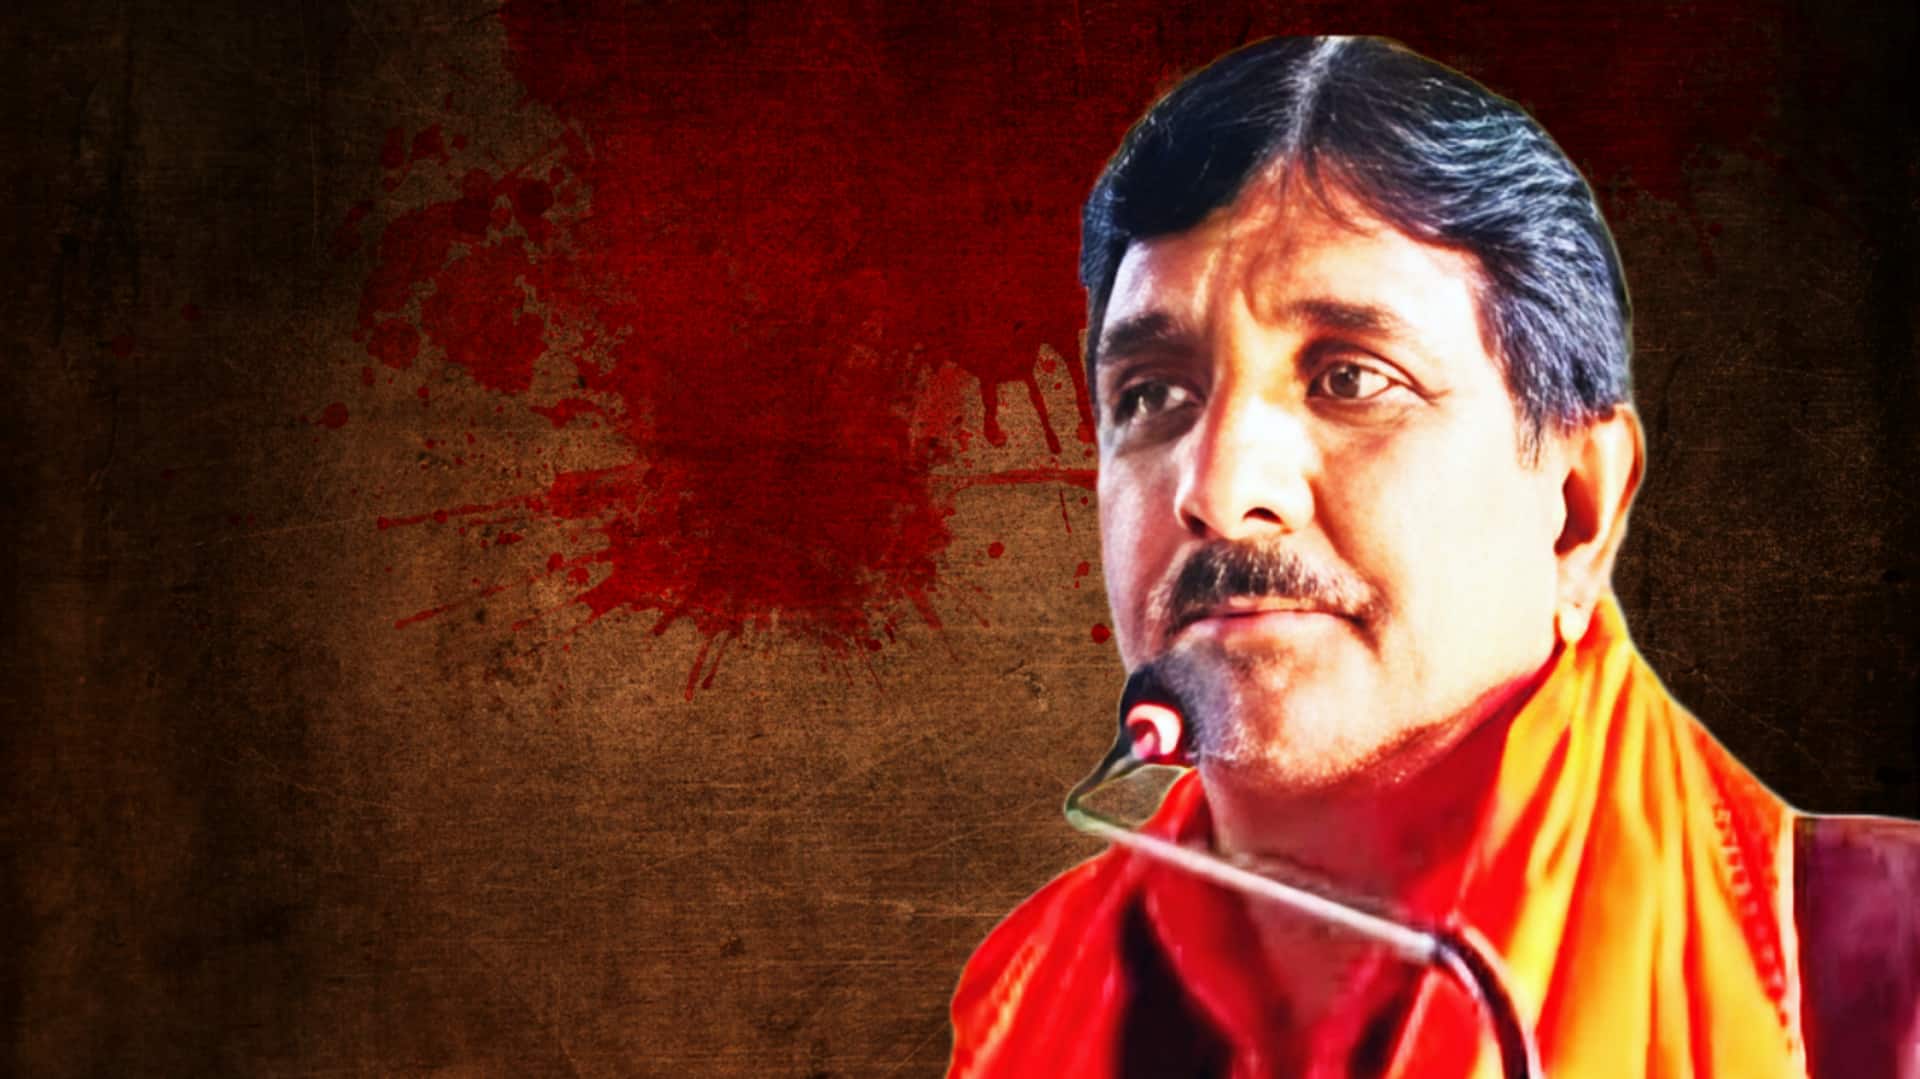 उत्तर प्रदेश: जौनपुर में भाजपा नेता की गोली मारकर हत्या, 2 बार लड़ा था विधानसभा चुनाव